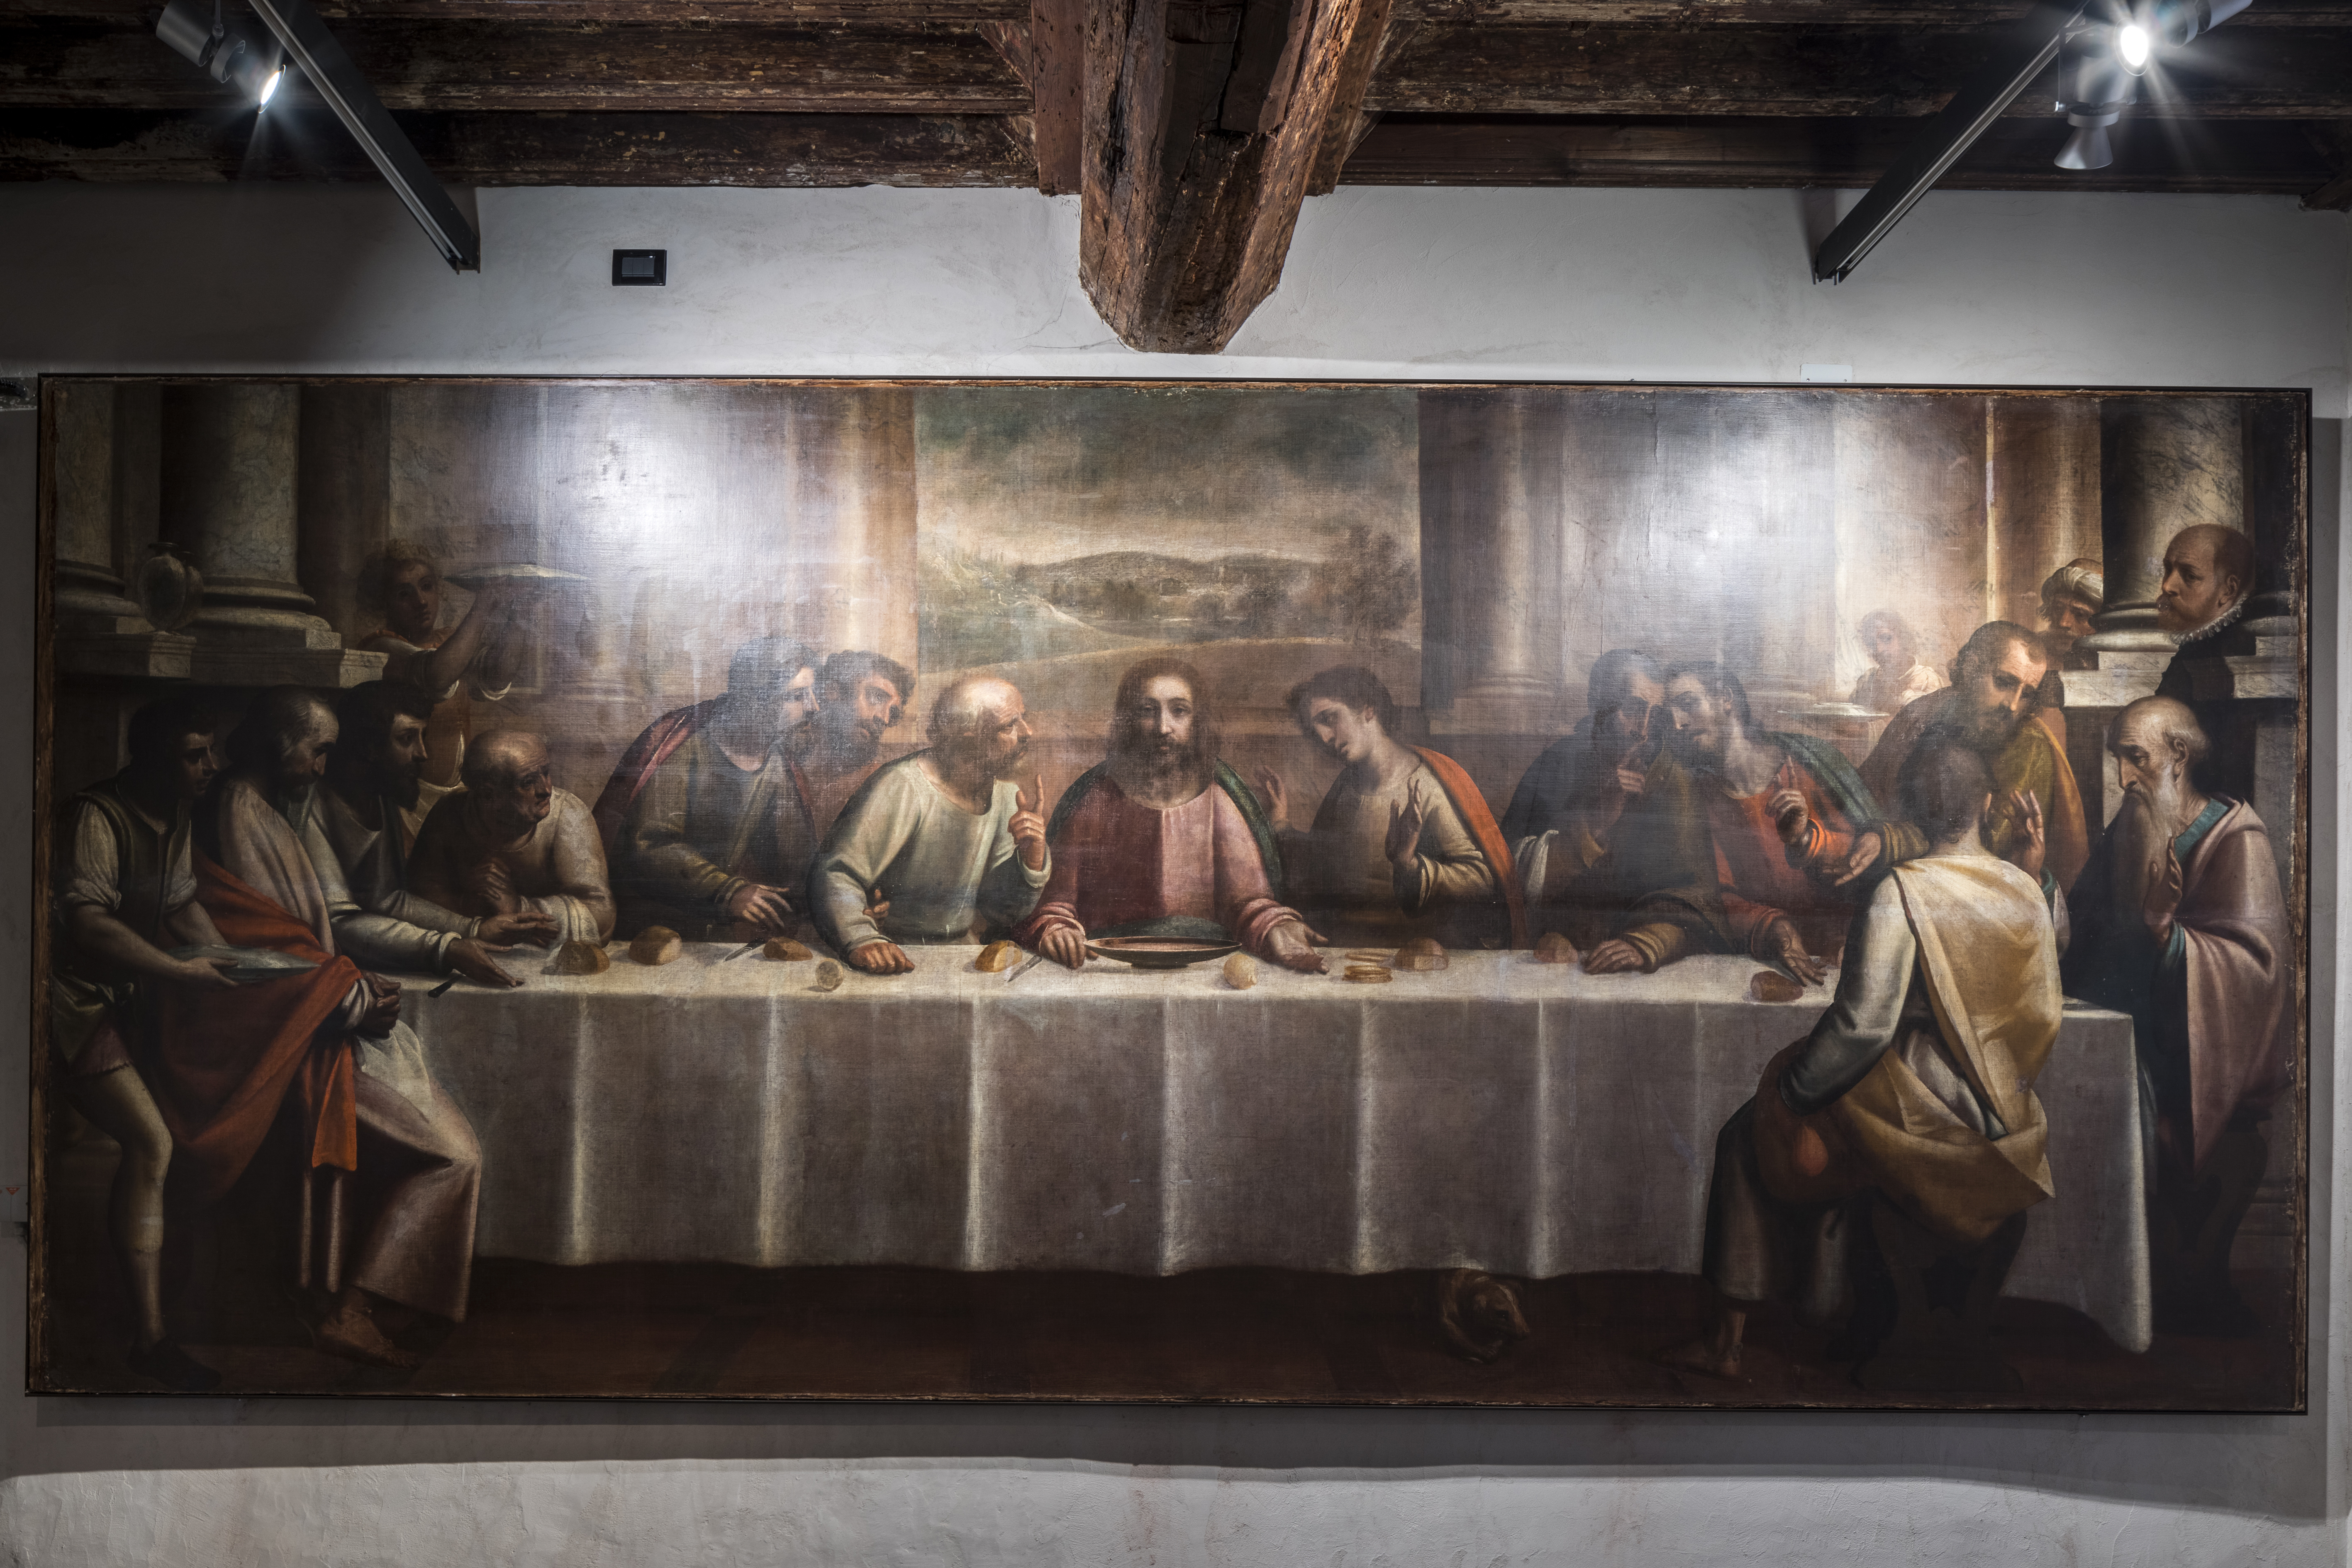 Luca Cambiaso, The Last Supper